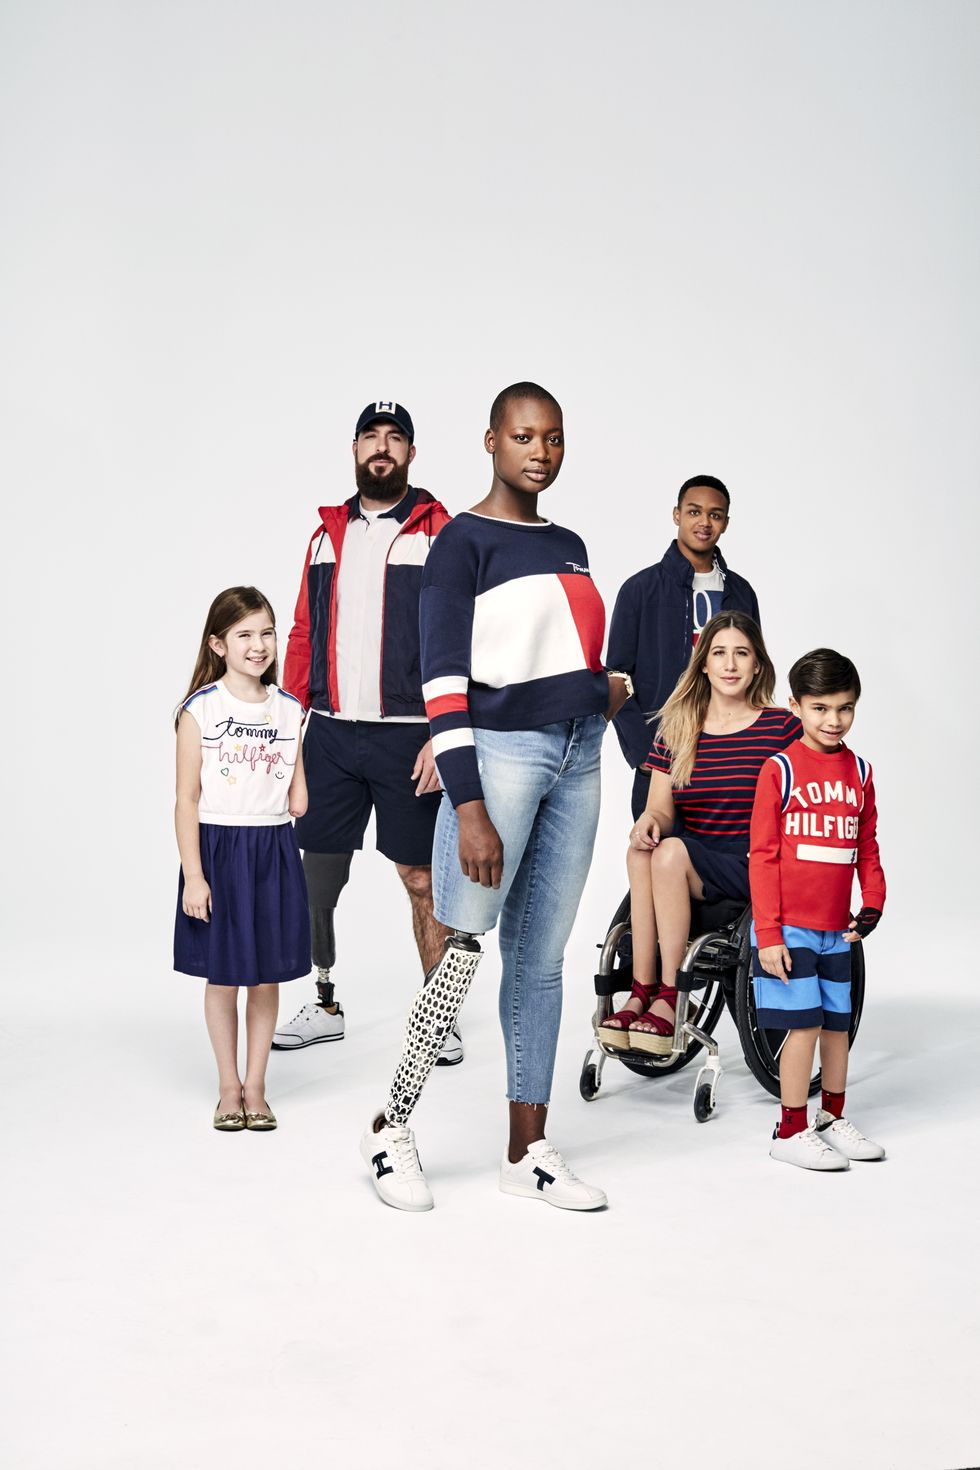 En kampanjbild från Tommy Hilfigers Adaptive kollektion. Sex personer i olika kön, ålder, etnicitet, storlek och funktion har på sig kläder från Tommy Hilfiger i jeans, vitt, marinblått och rött.